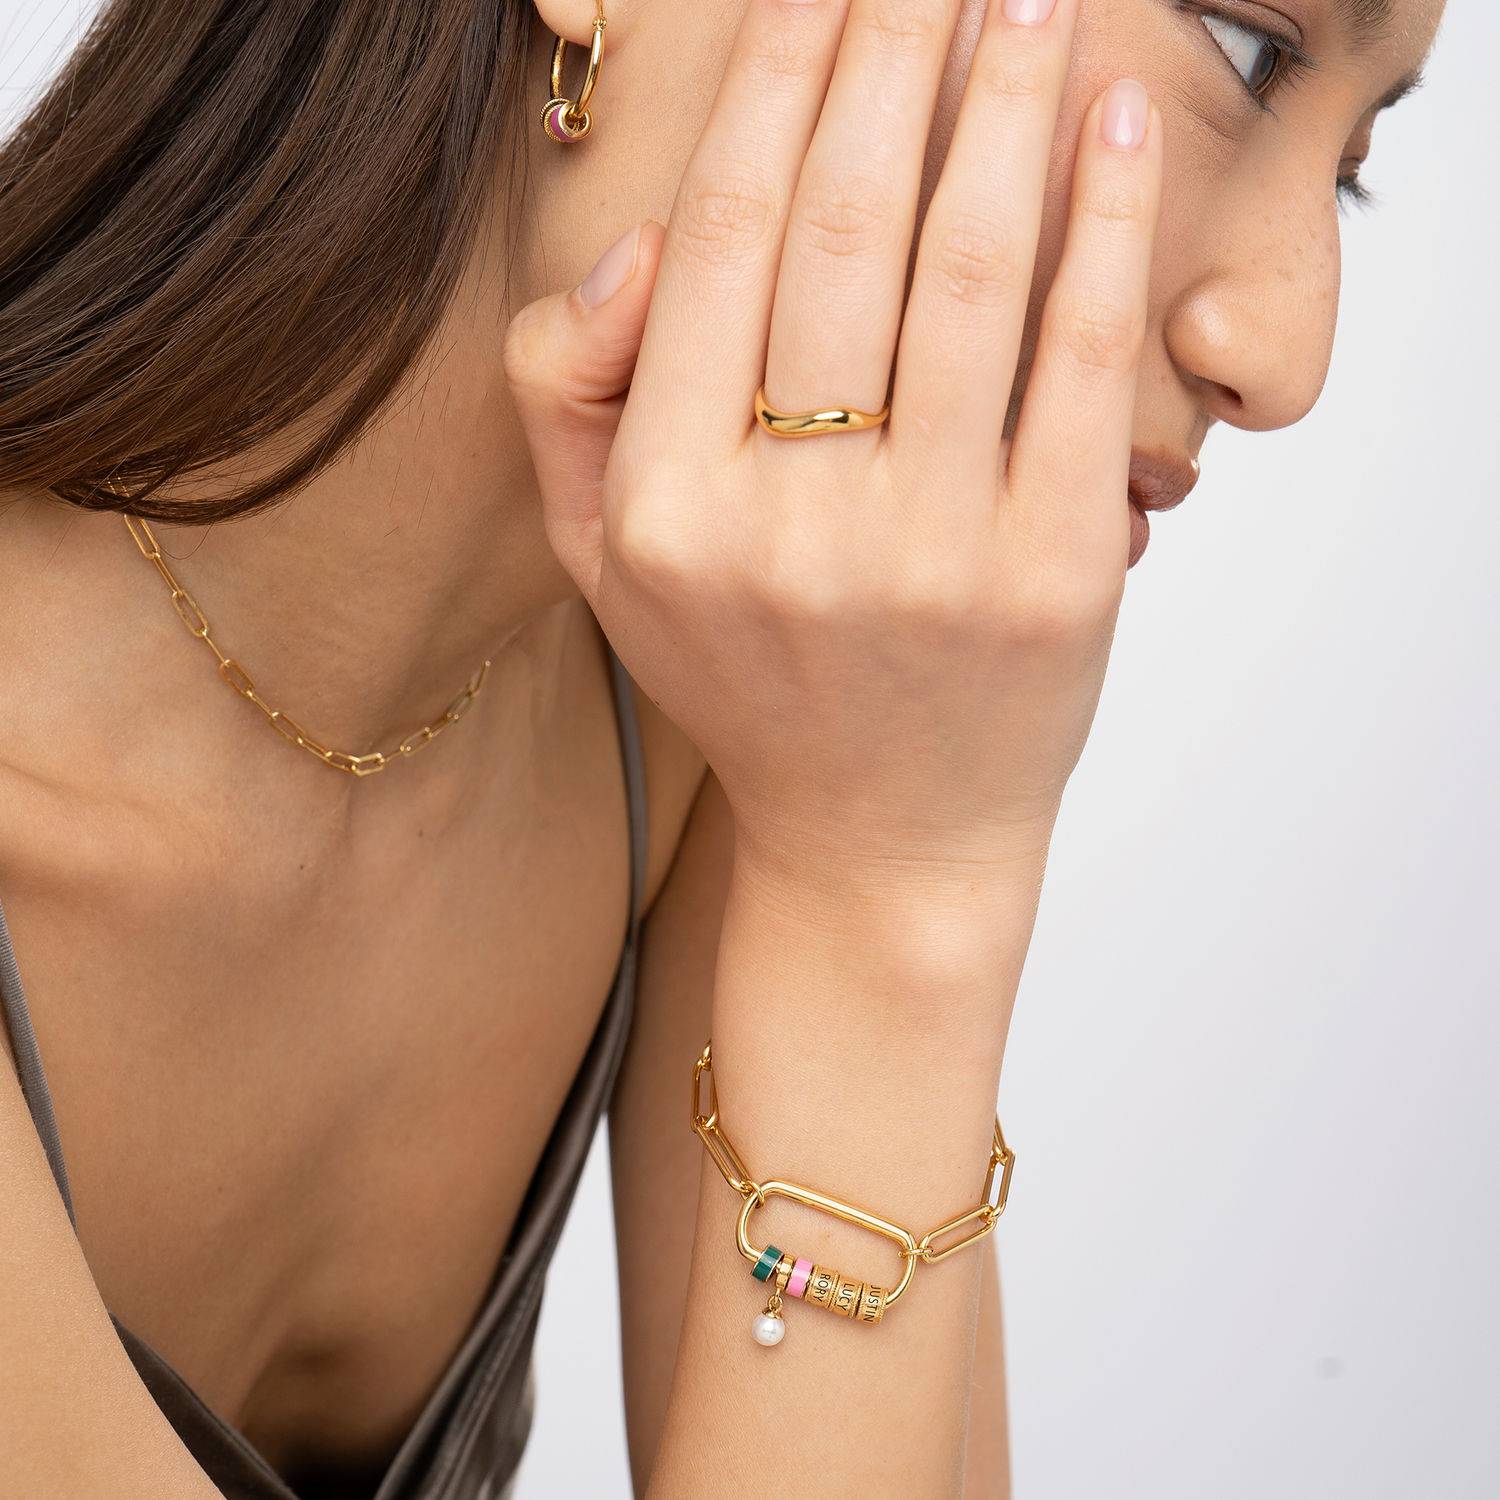 Linda Armband mit ovalem Verschluss und Perle - 750er Gold-Vermeil-4 Produktfoto